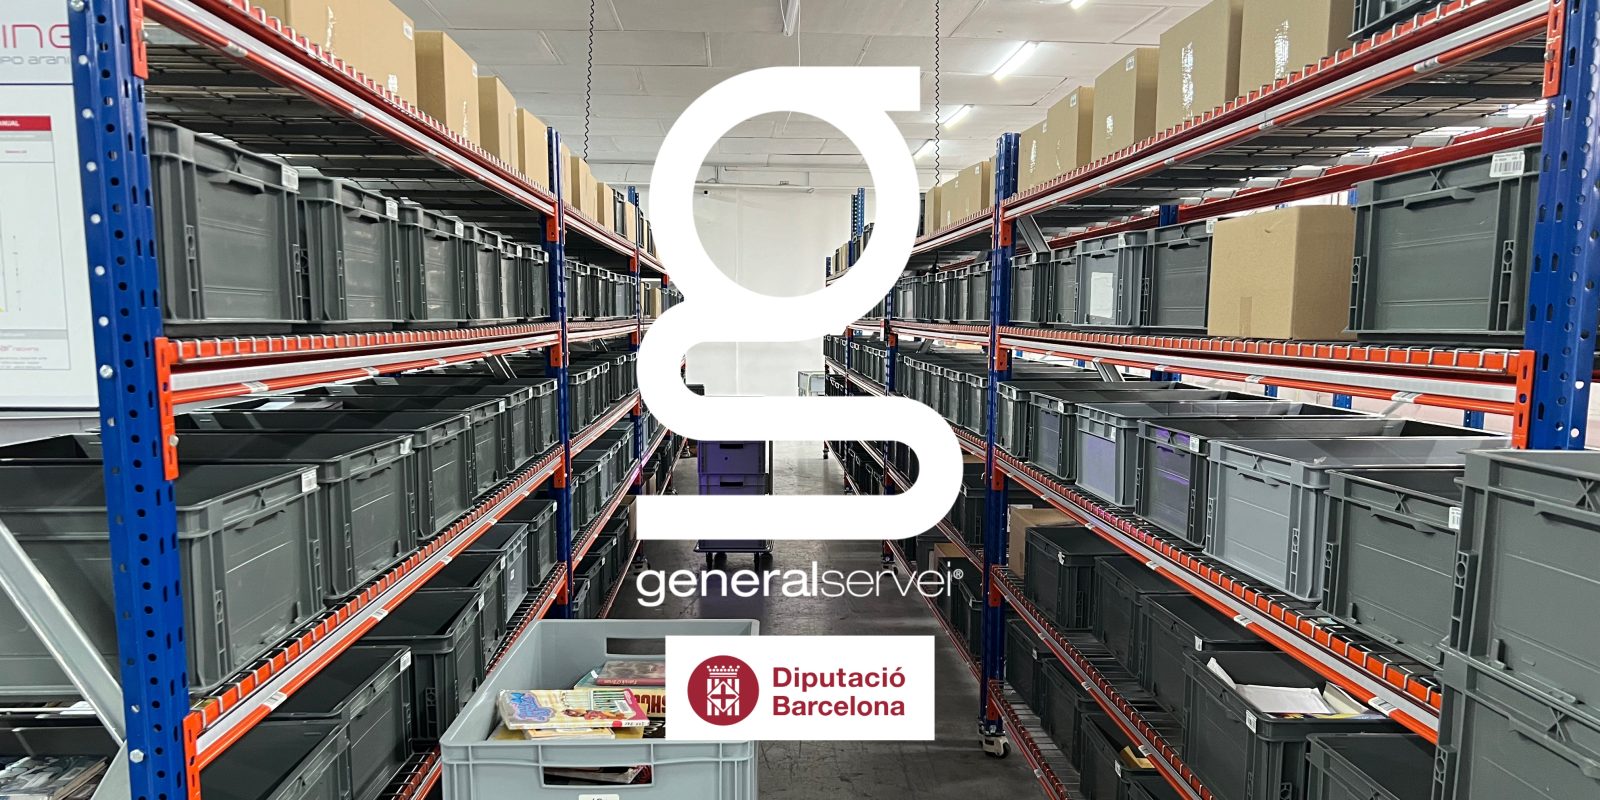 Modernizando el servicio de la red de Bibliotecas de la Diputación de Barcelona: La Transformación Digital de los Servicios Bibliotecarios